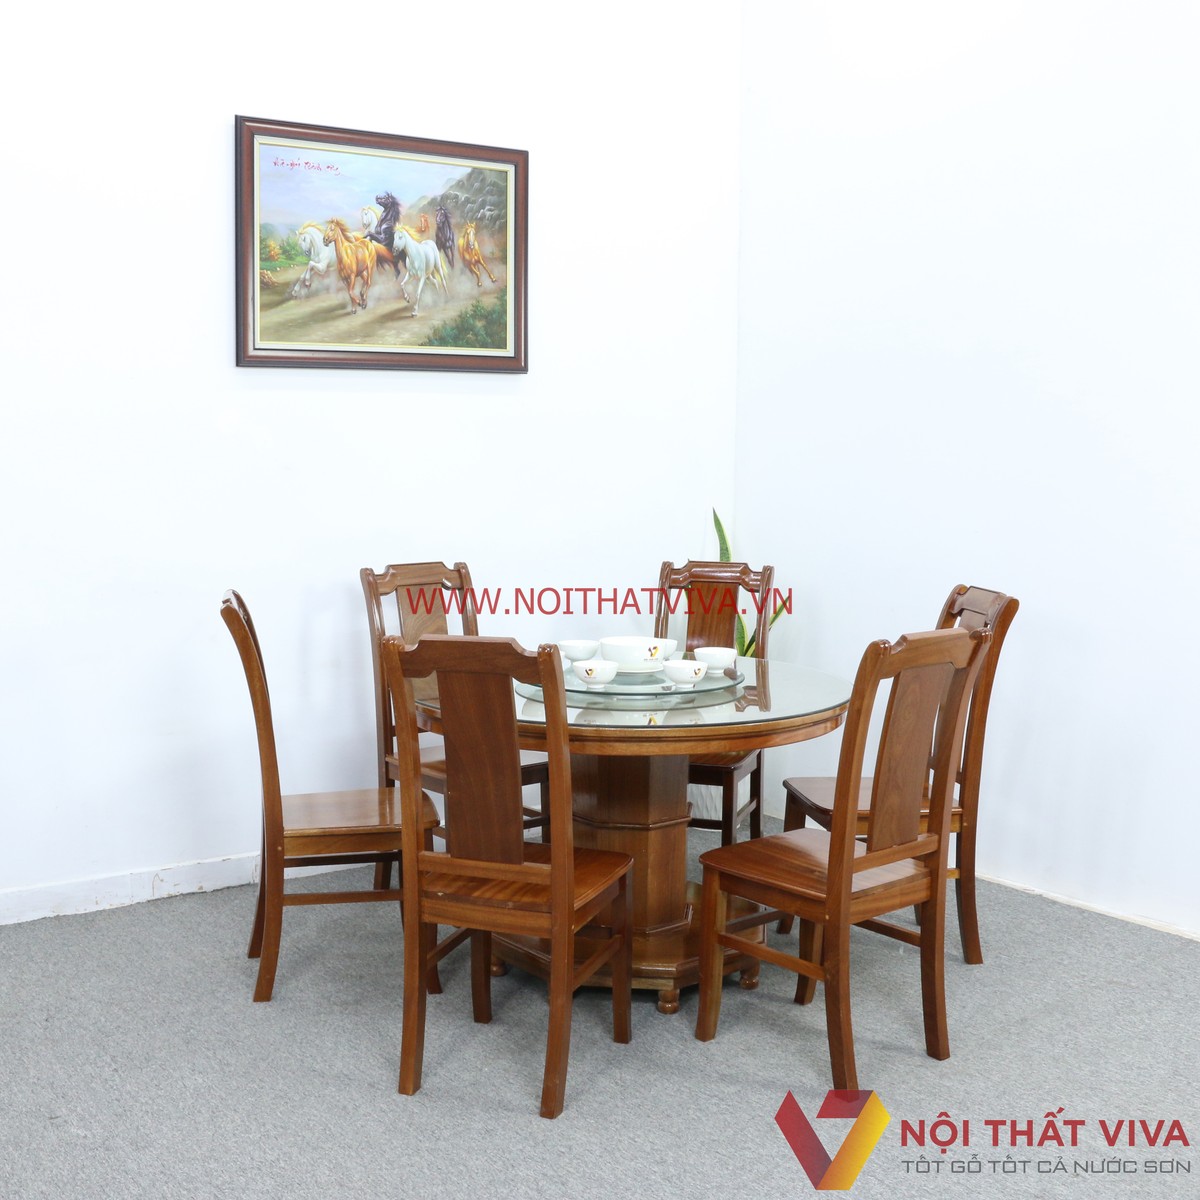 Đa dạng mẫu mã bàn ăn tròn bằng gỗ theo xu hướng dành cho gia đình Việt